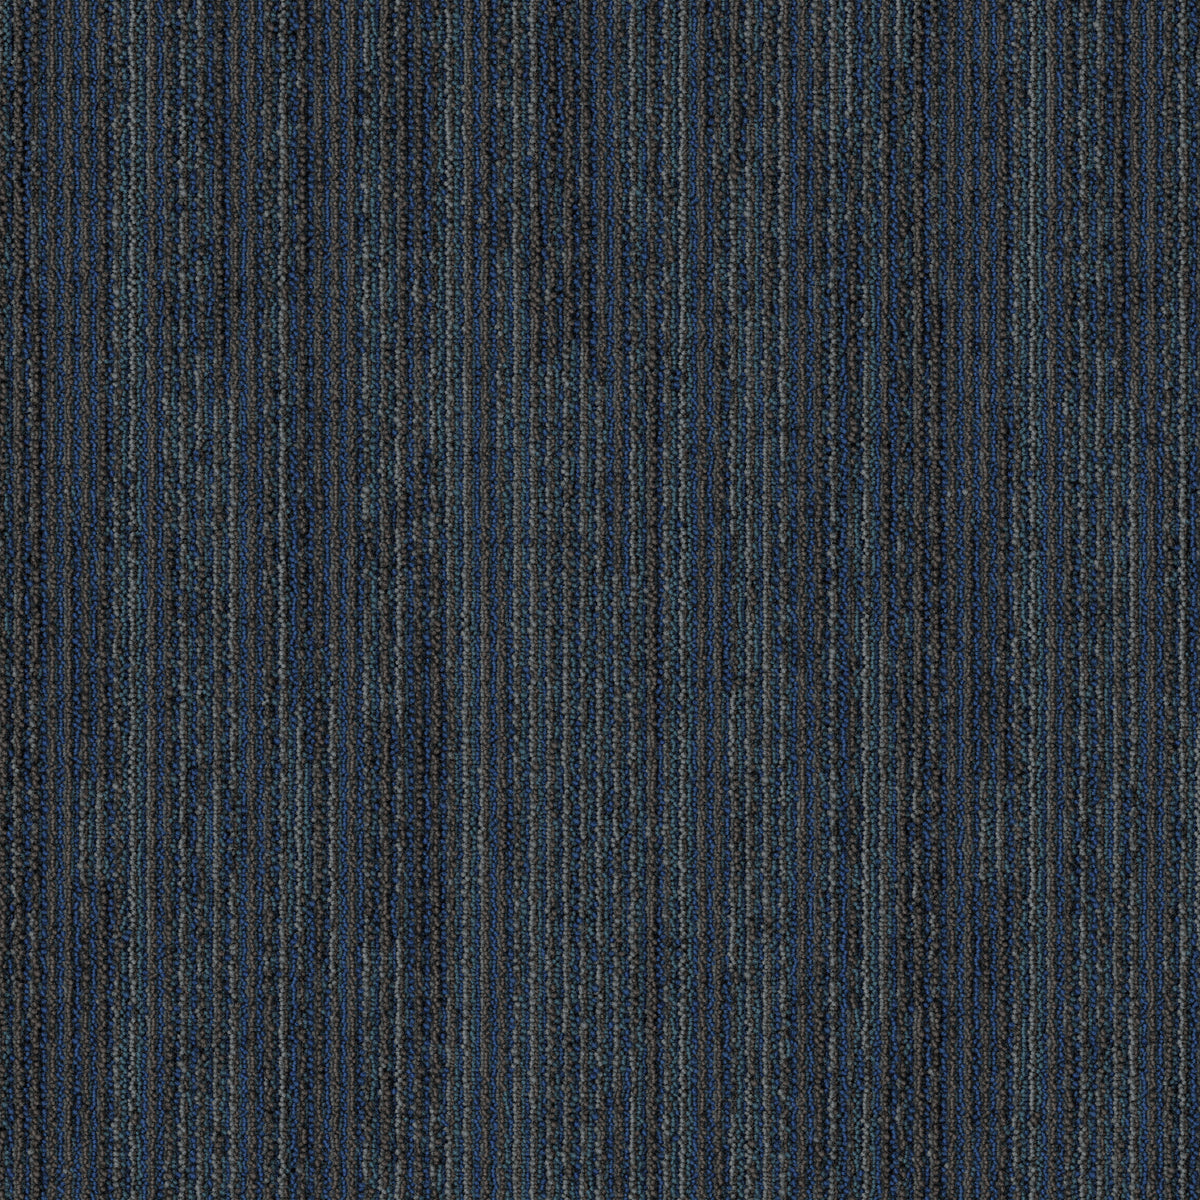 Mohawk Group - Artisanal - Blended Twist - Carpet Tile - Jewel